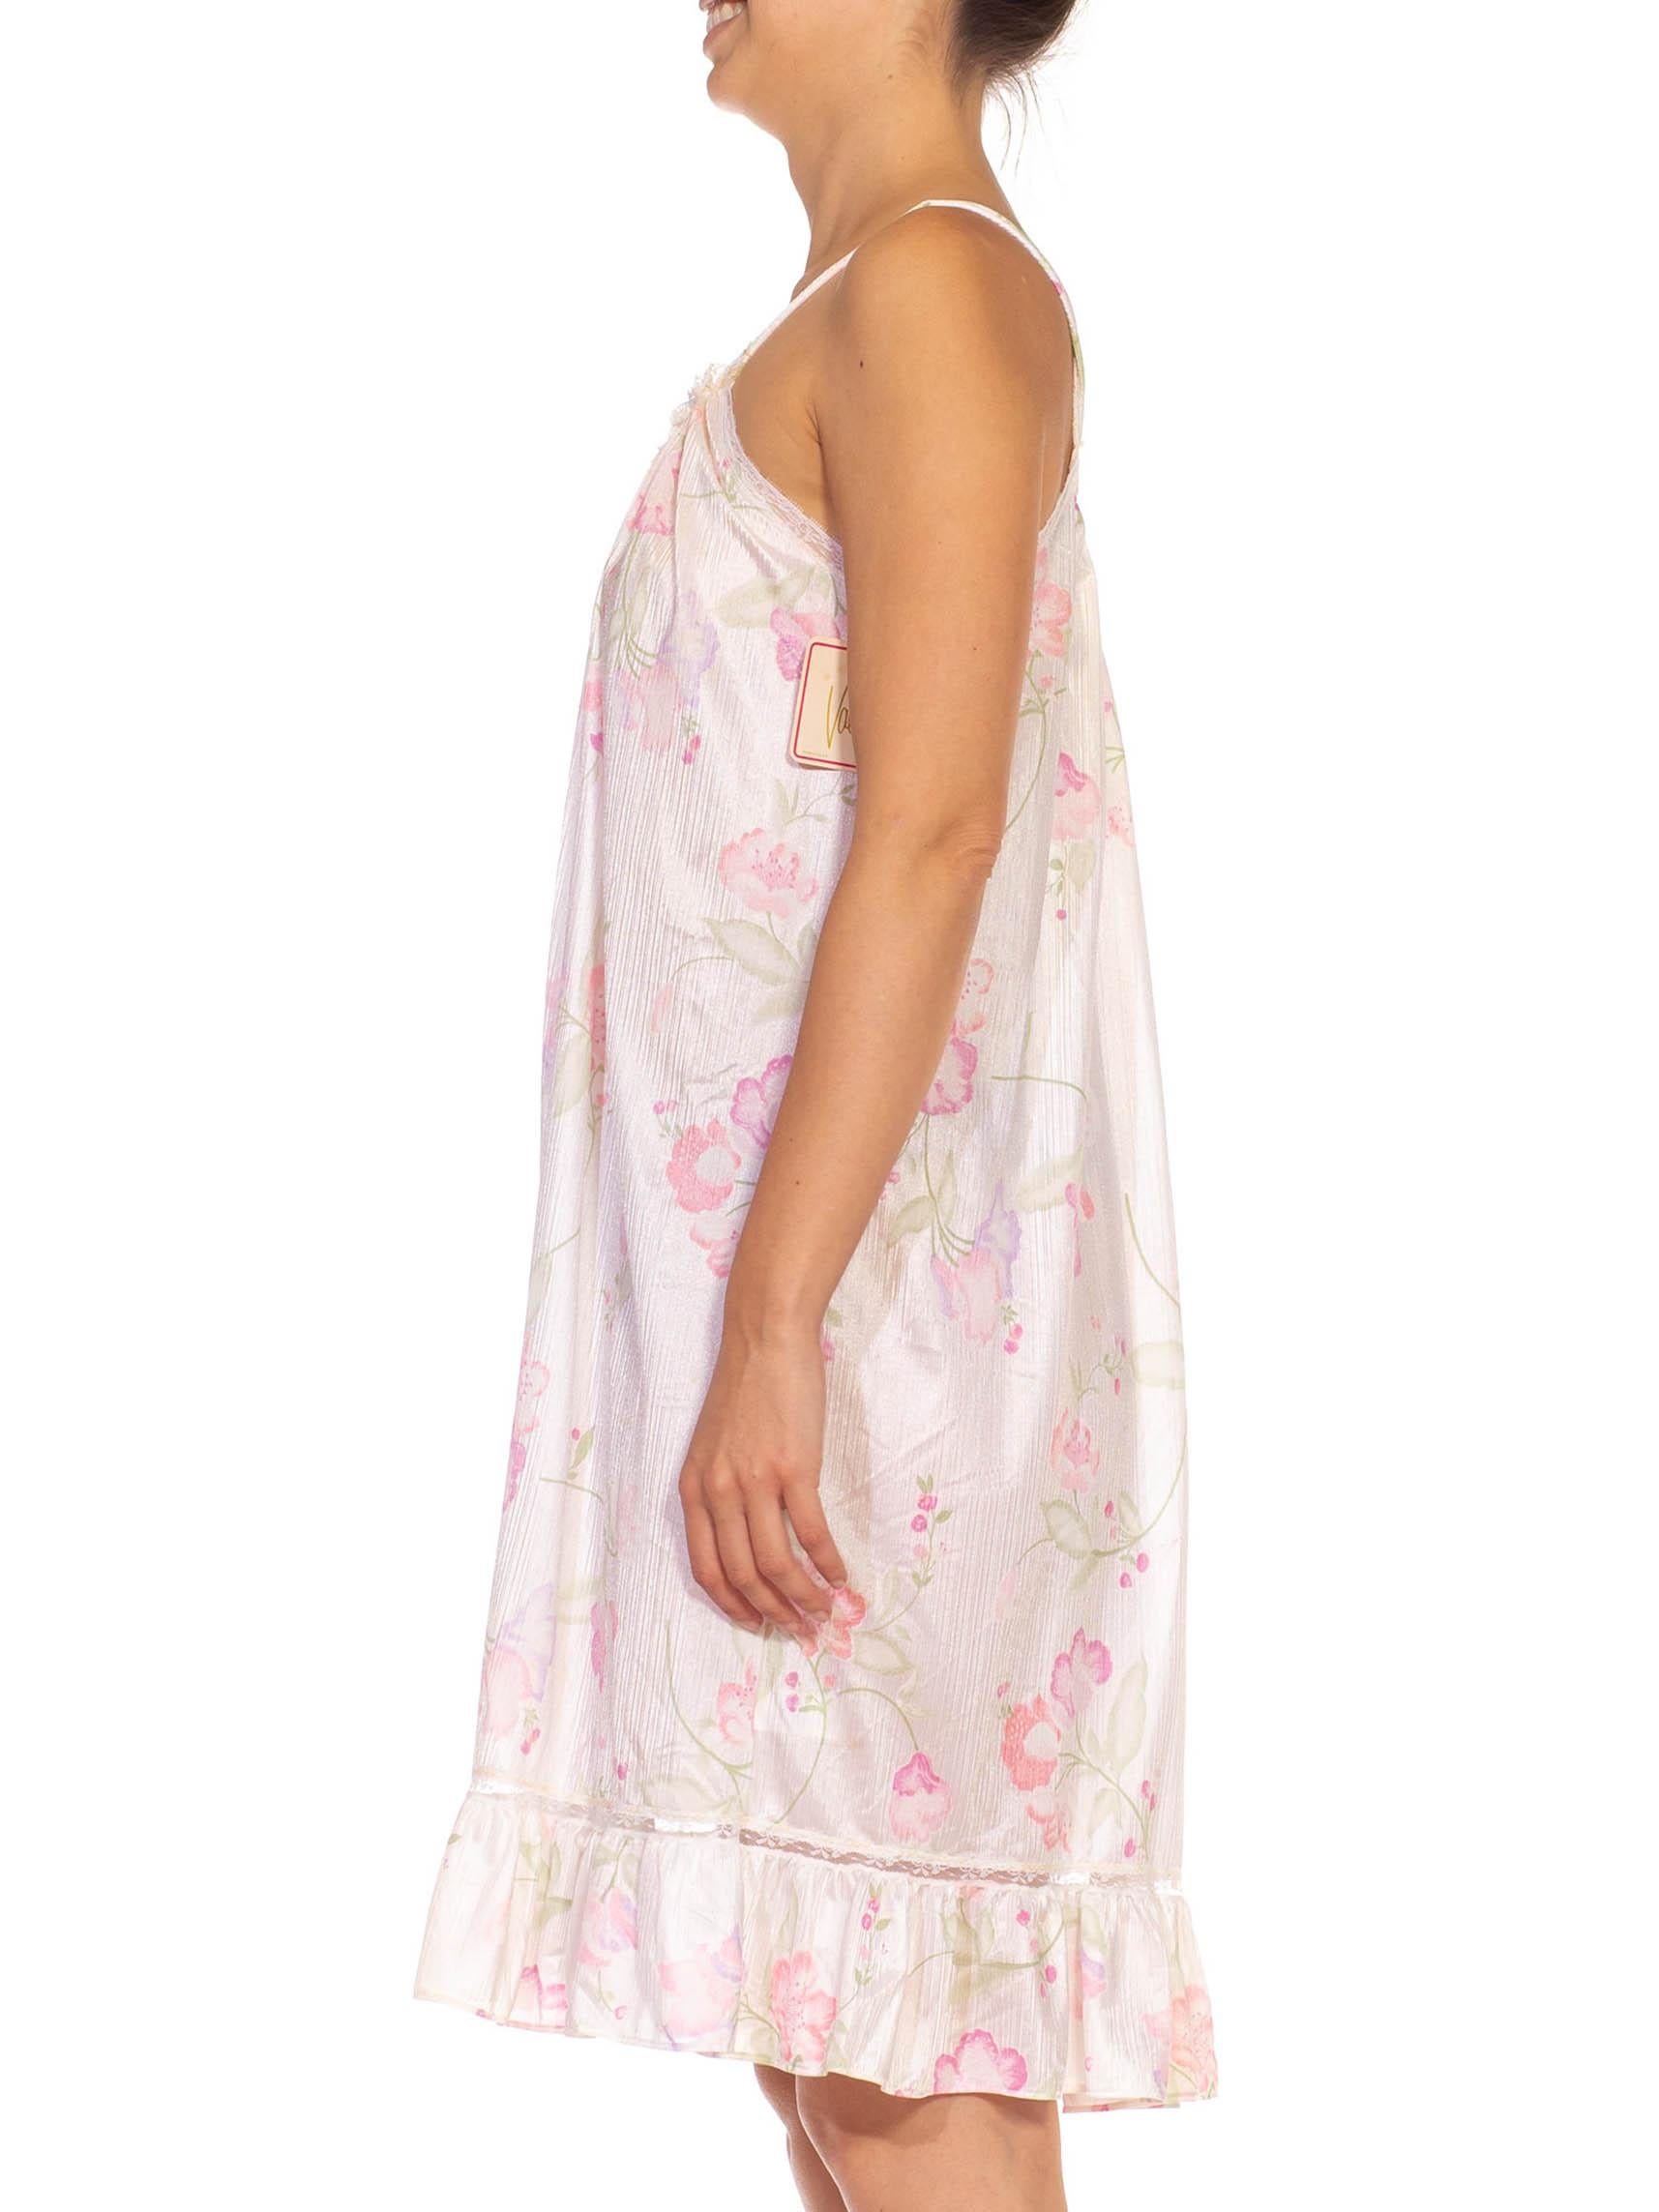 robe-culotte à bretelles en nylon à fleurs blanches et roses des années 1980